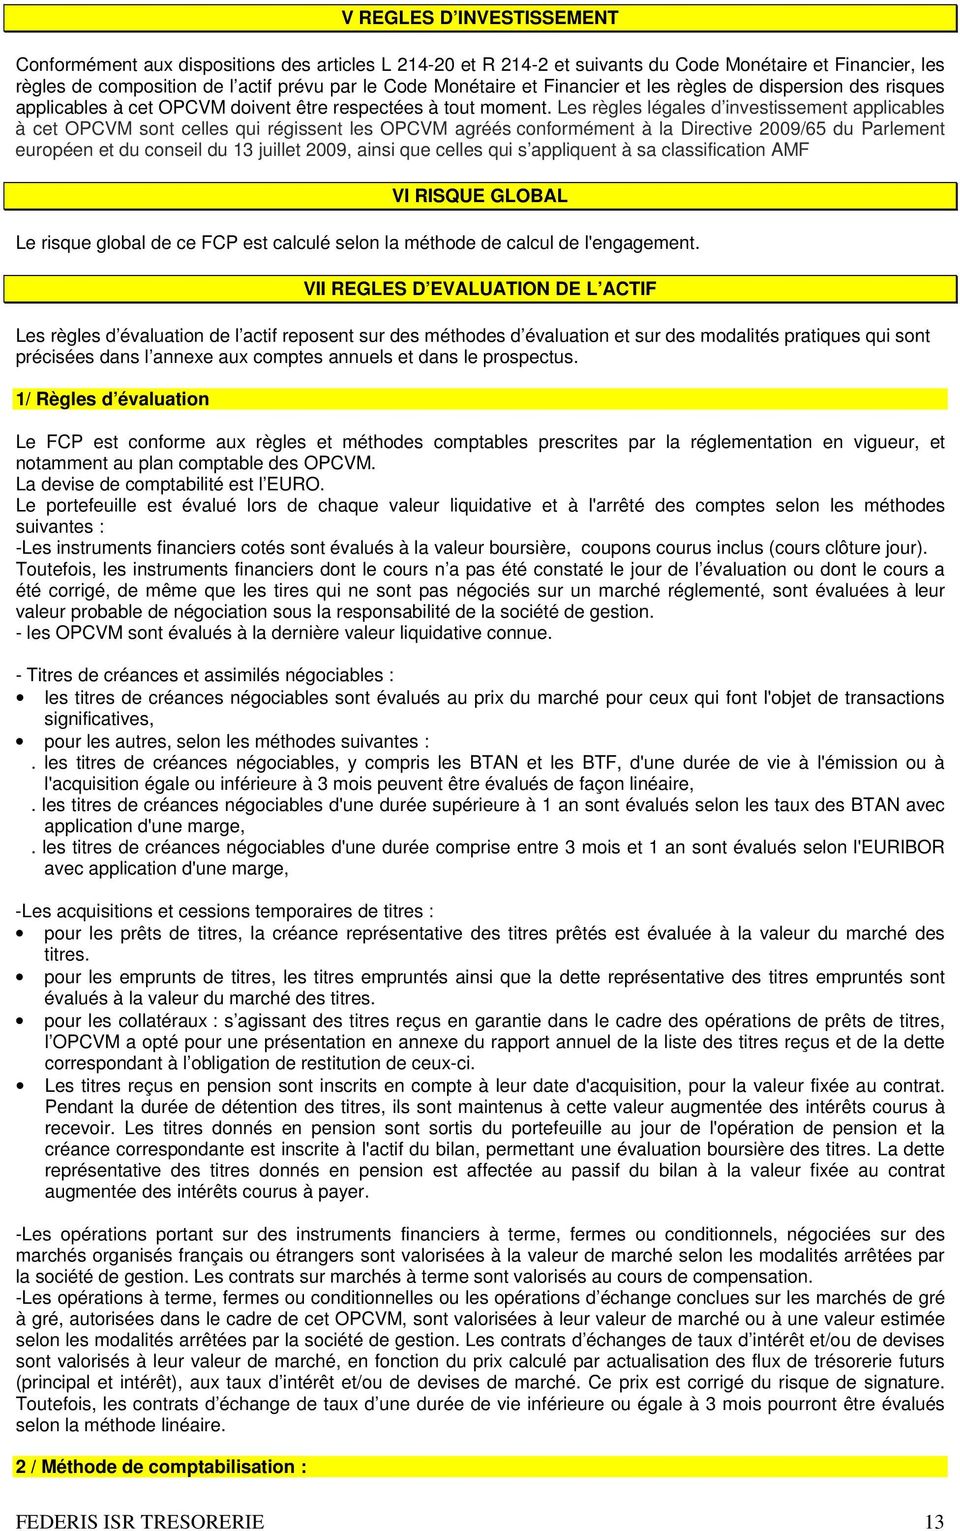 Les règles légales d investissement applicables à cet OPCVM sont celles qui régissent les OPCVM agréés conformément à la Directive 2009/65 du Parlement européen et du conseil du 13 juillet 2009,